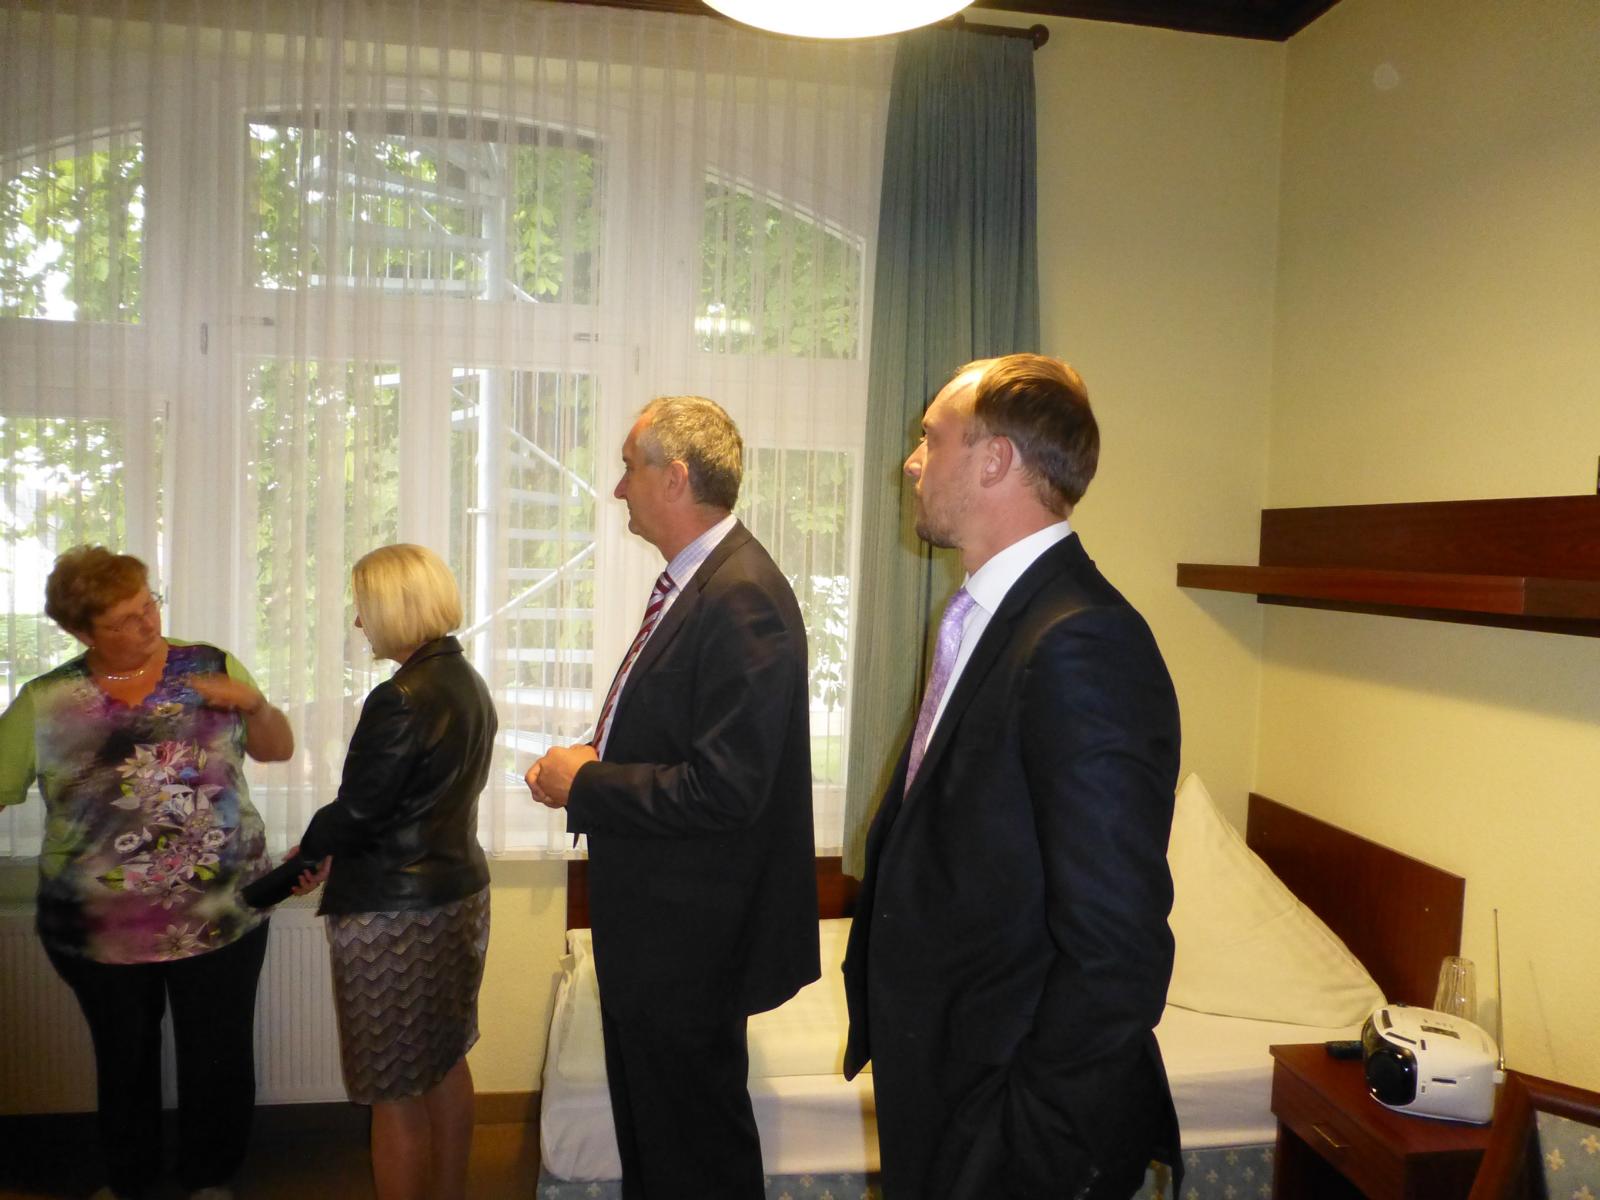 Besichtigung der Gästezimmer in der Villa Aura mit Sozialministerin Clauß